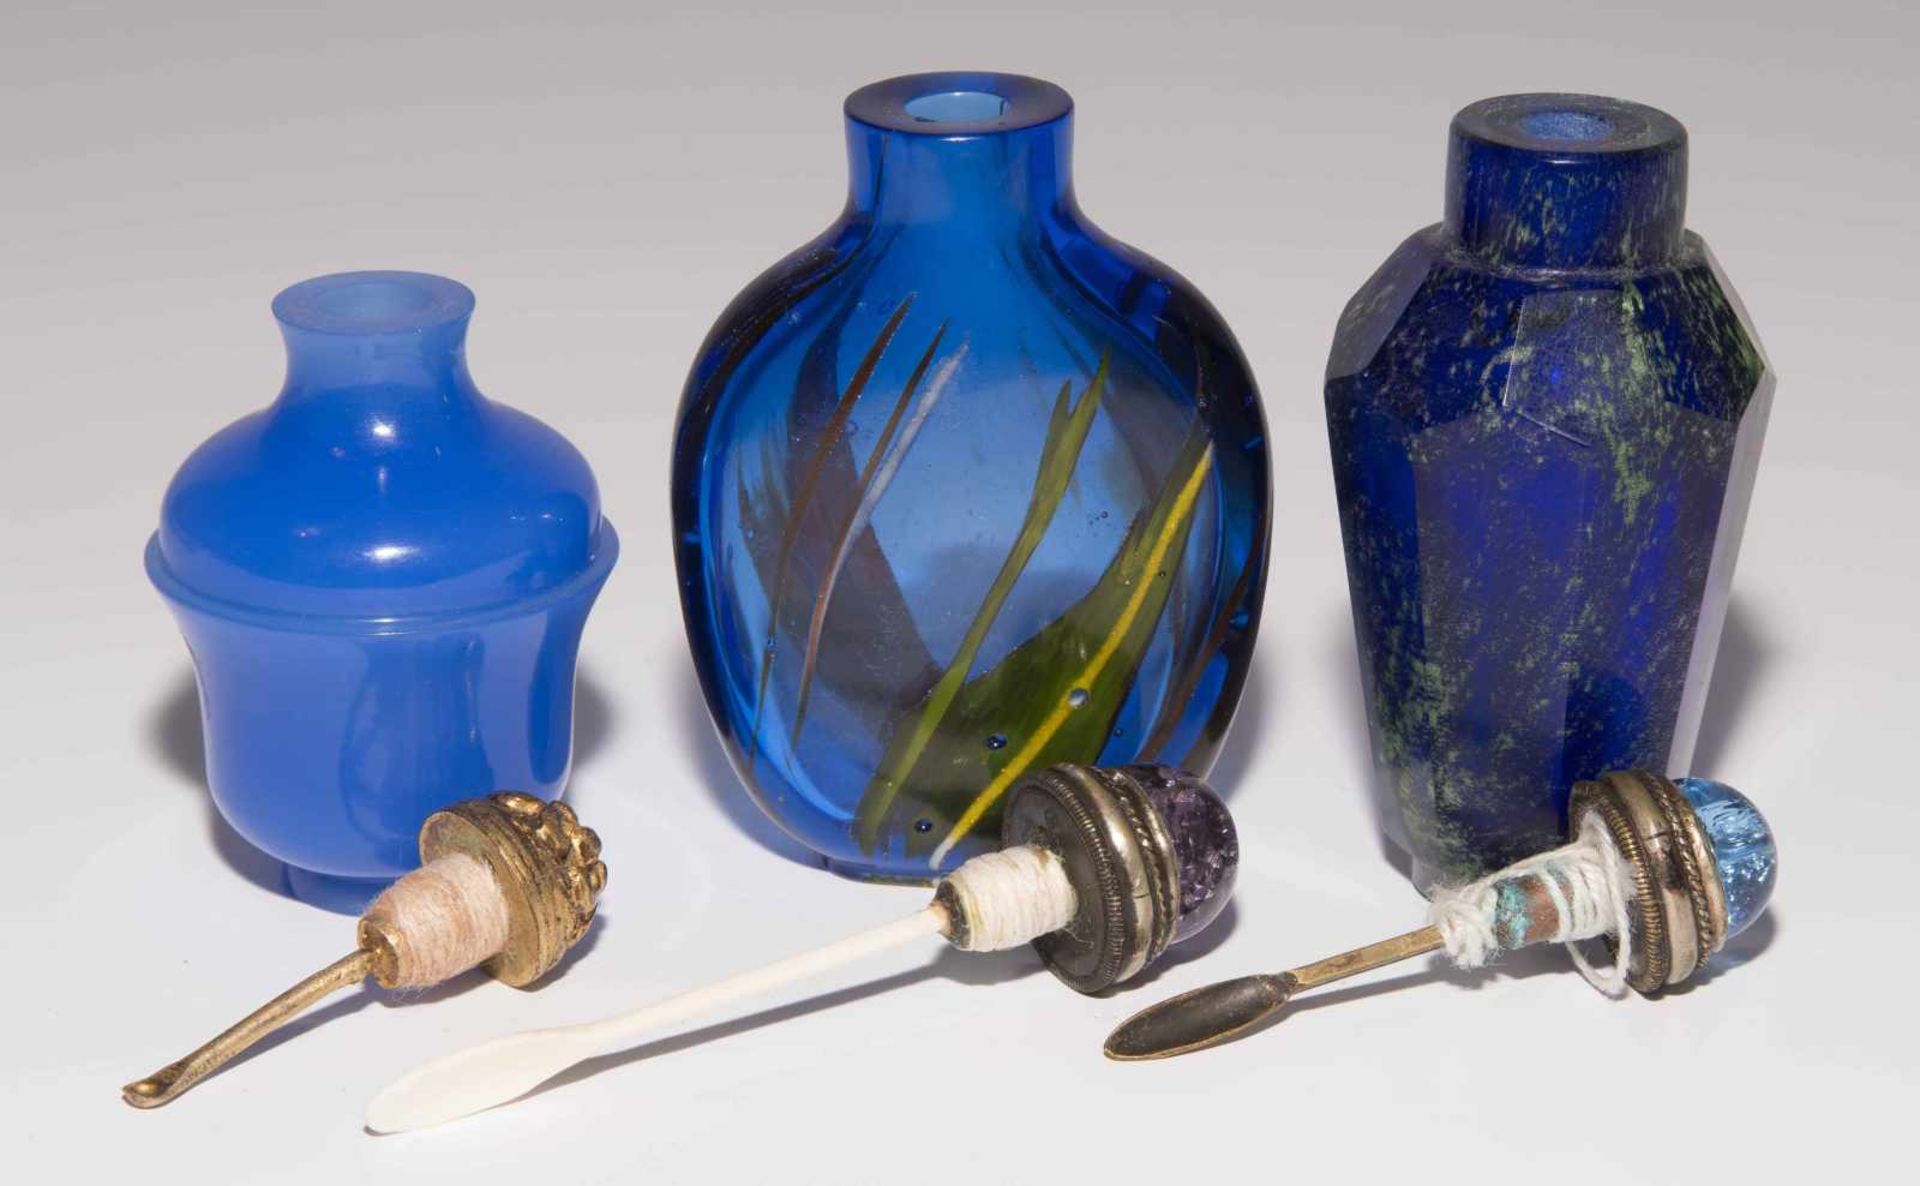 6 Glas Snuff BottlesChina. Opakes und transparentes Glas in verschiedenen Blautönen tlw. bunt - Image 13 of 15